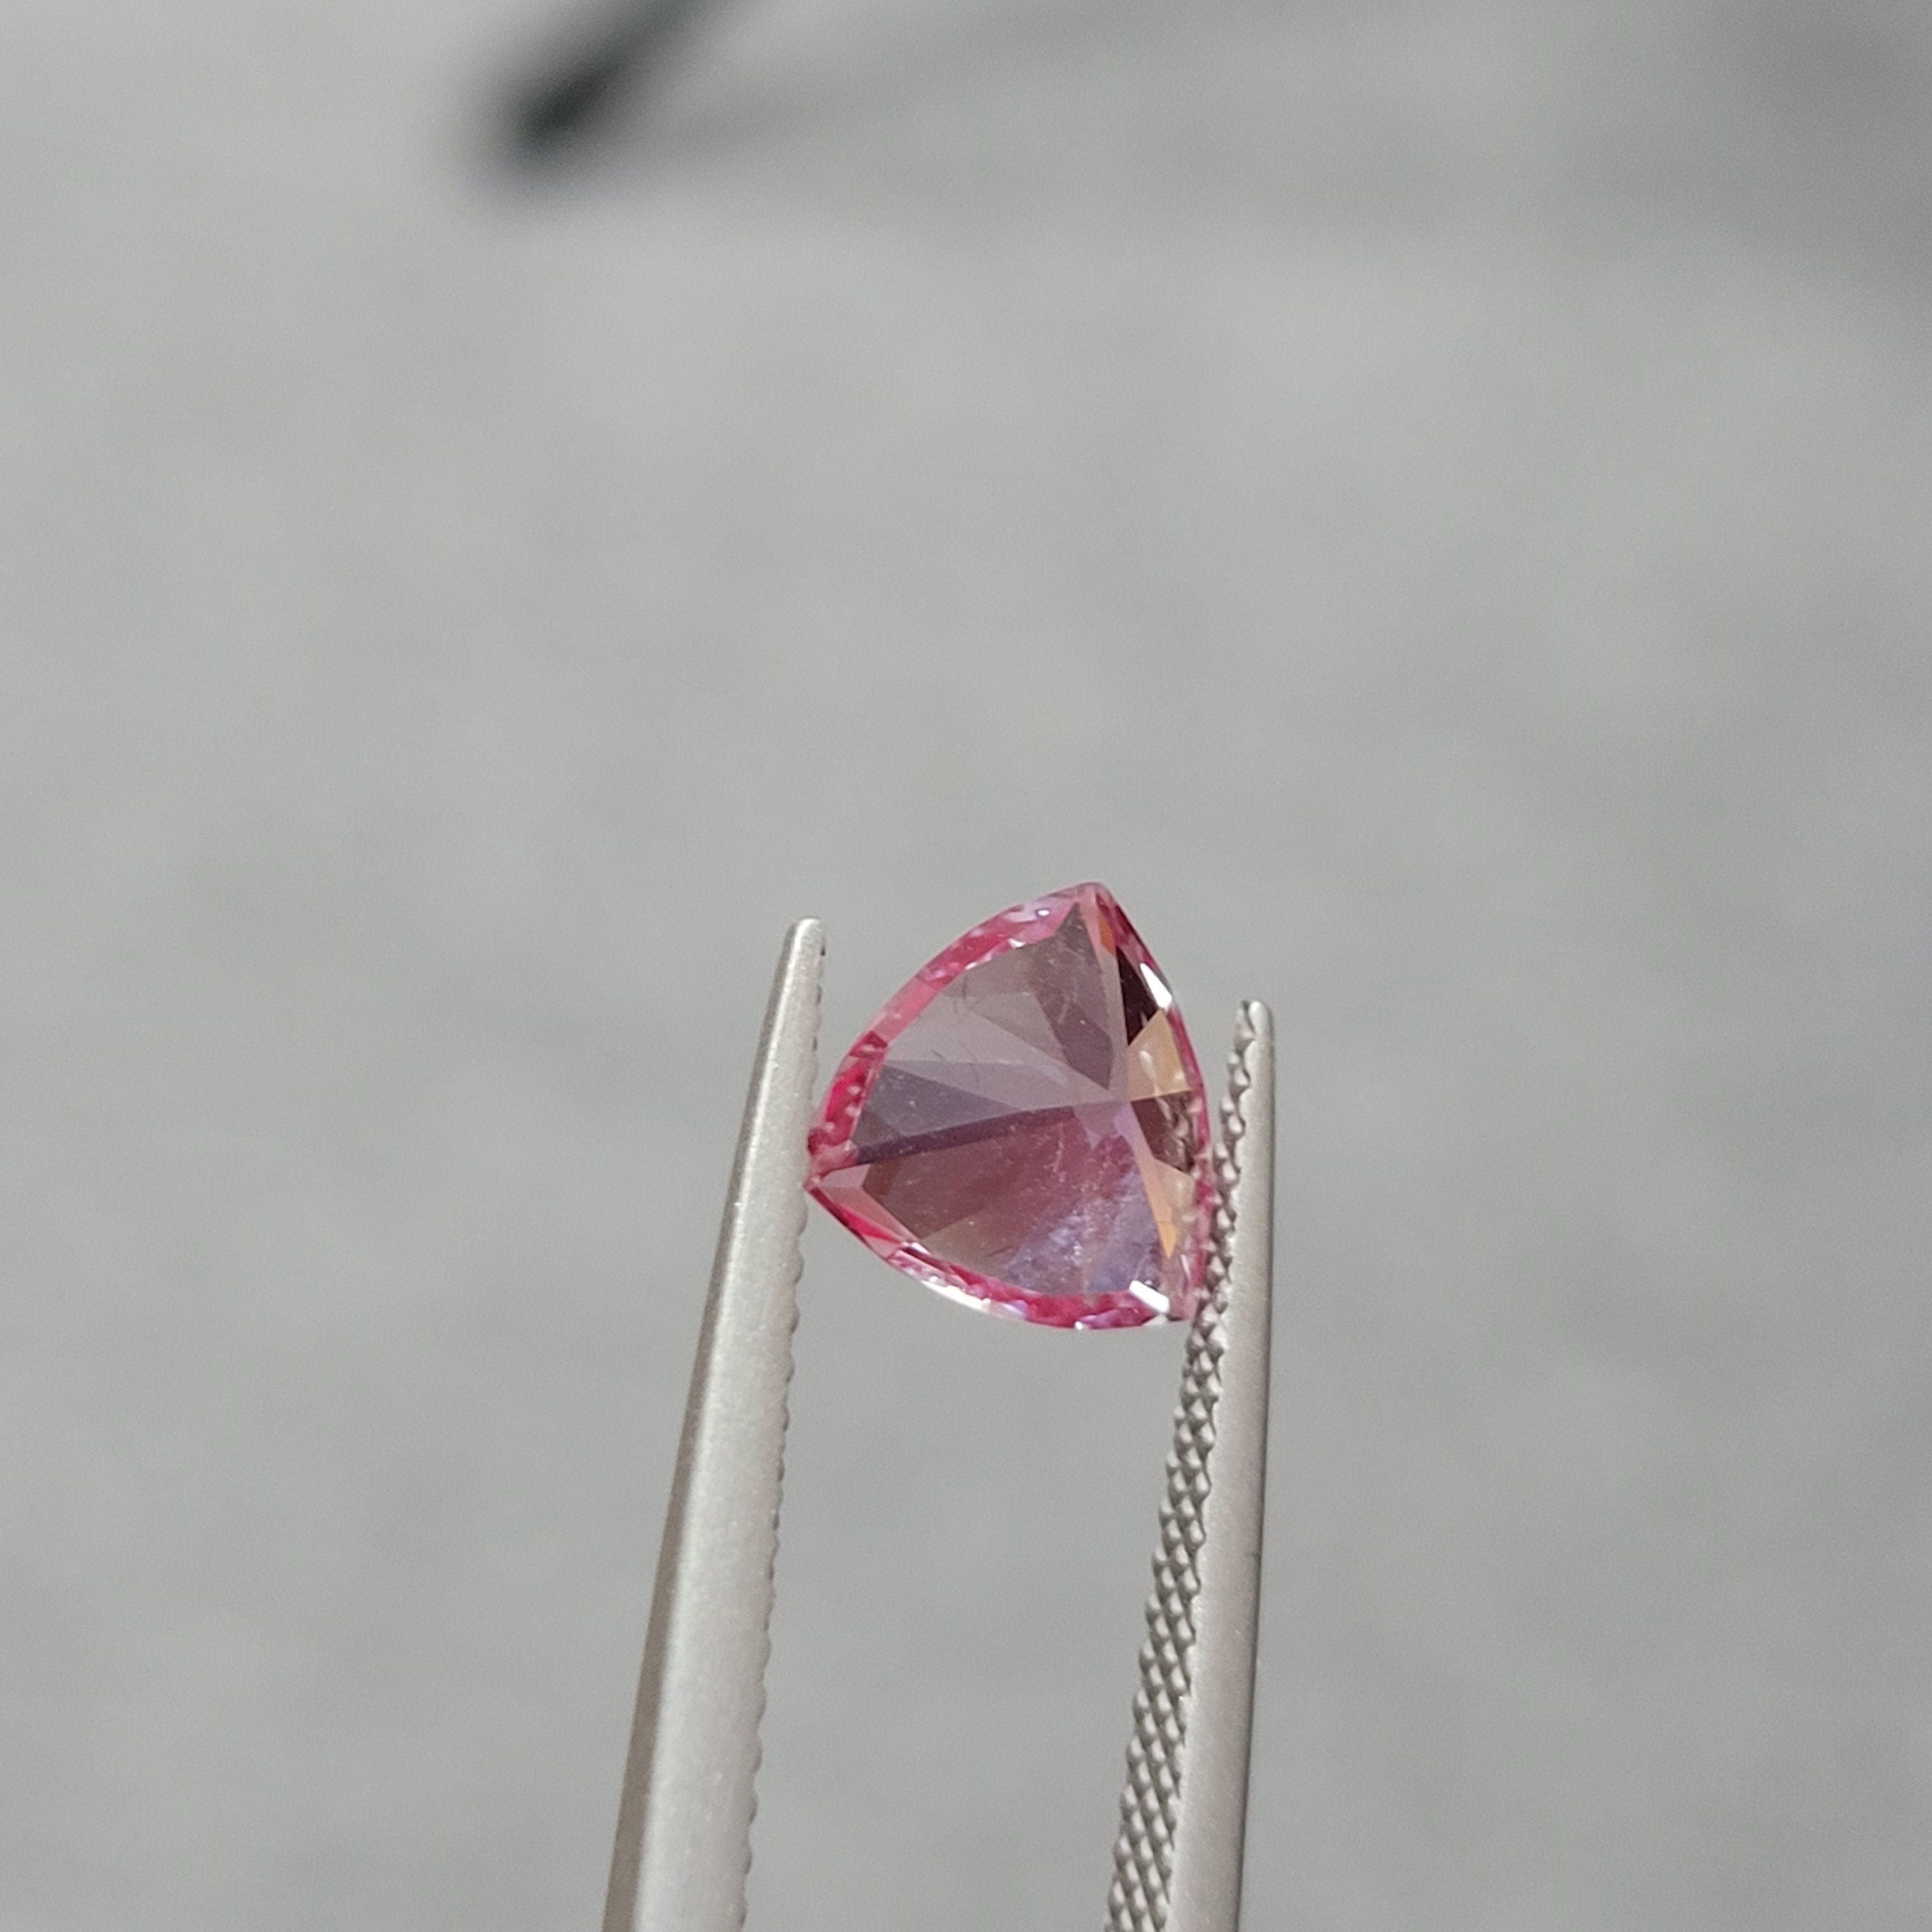 8mm 1.8ct loose alexandrite lab grown trillion cut loop clean gemstone